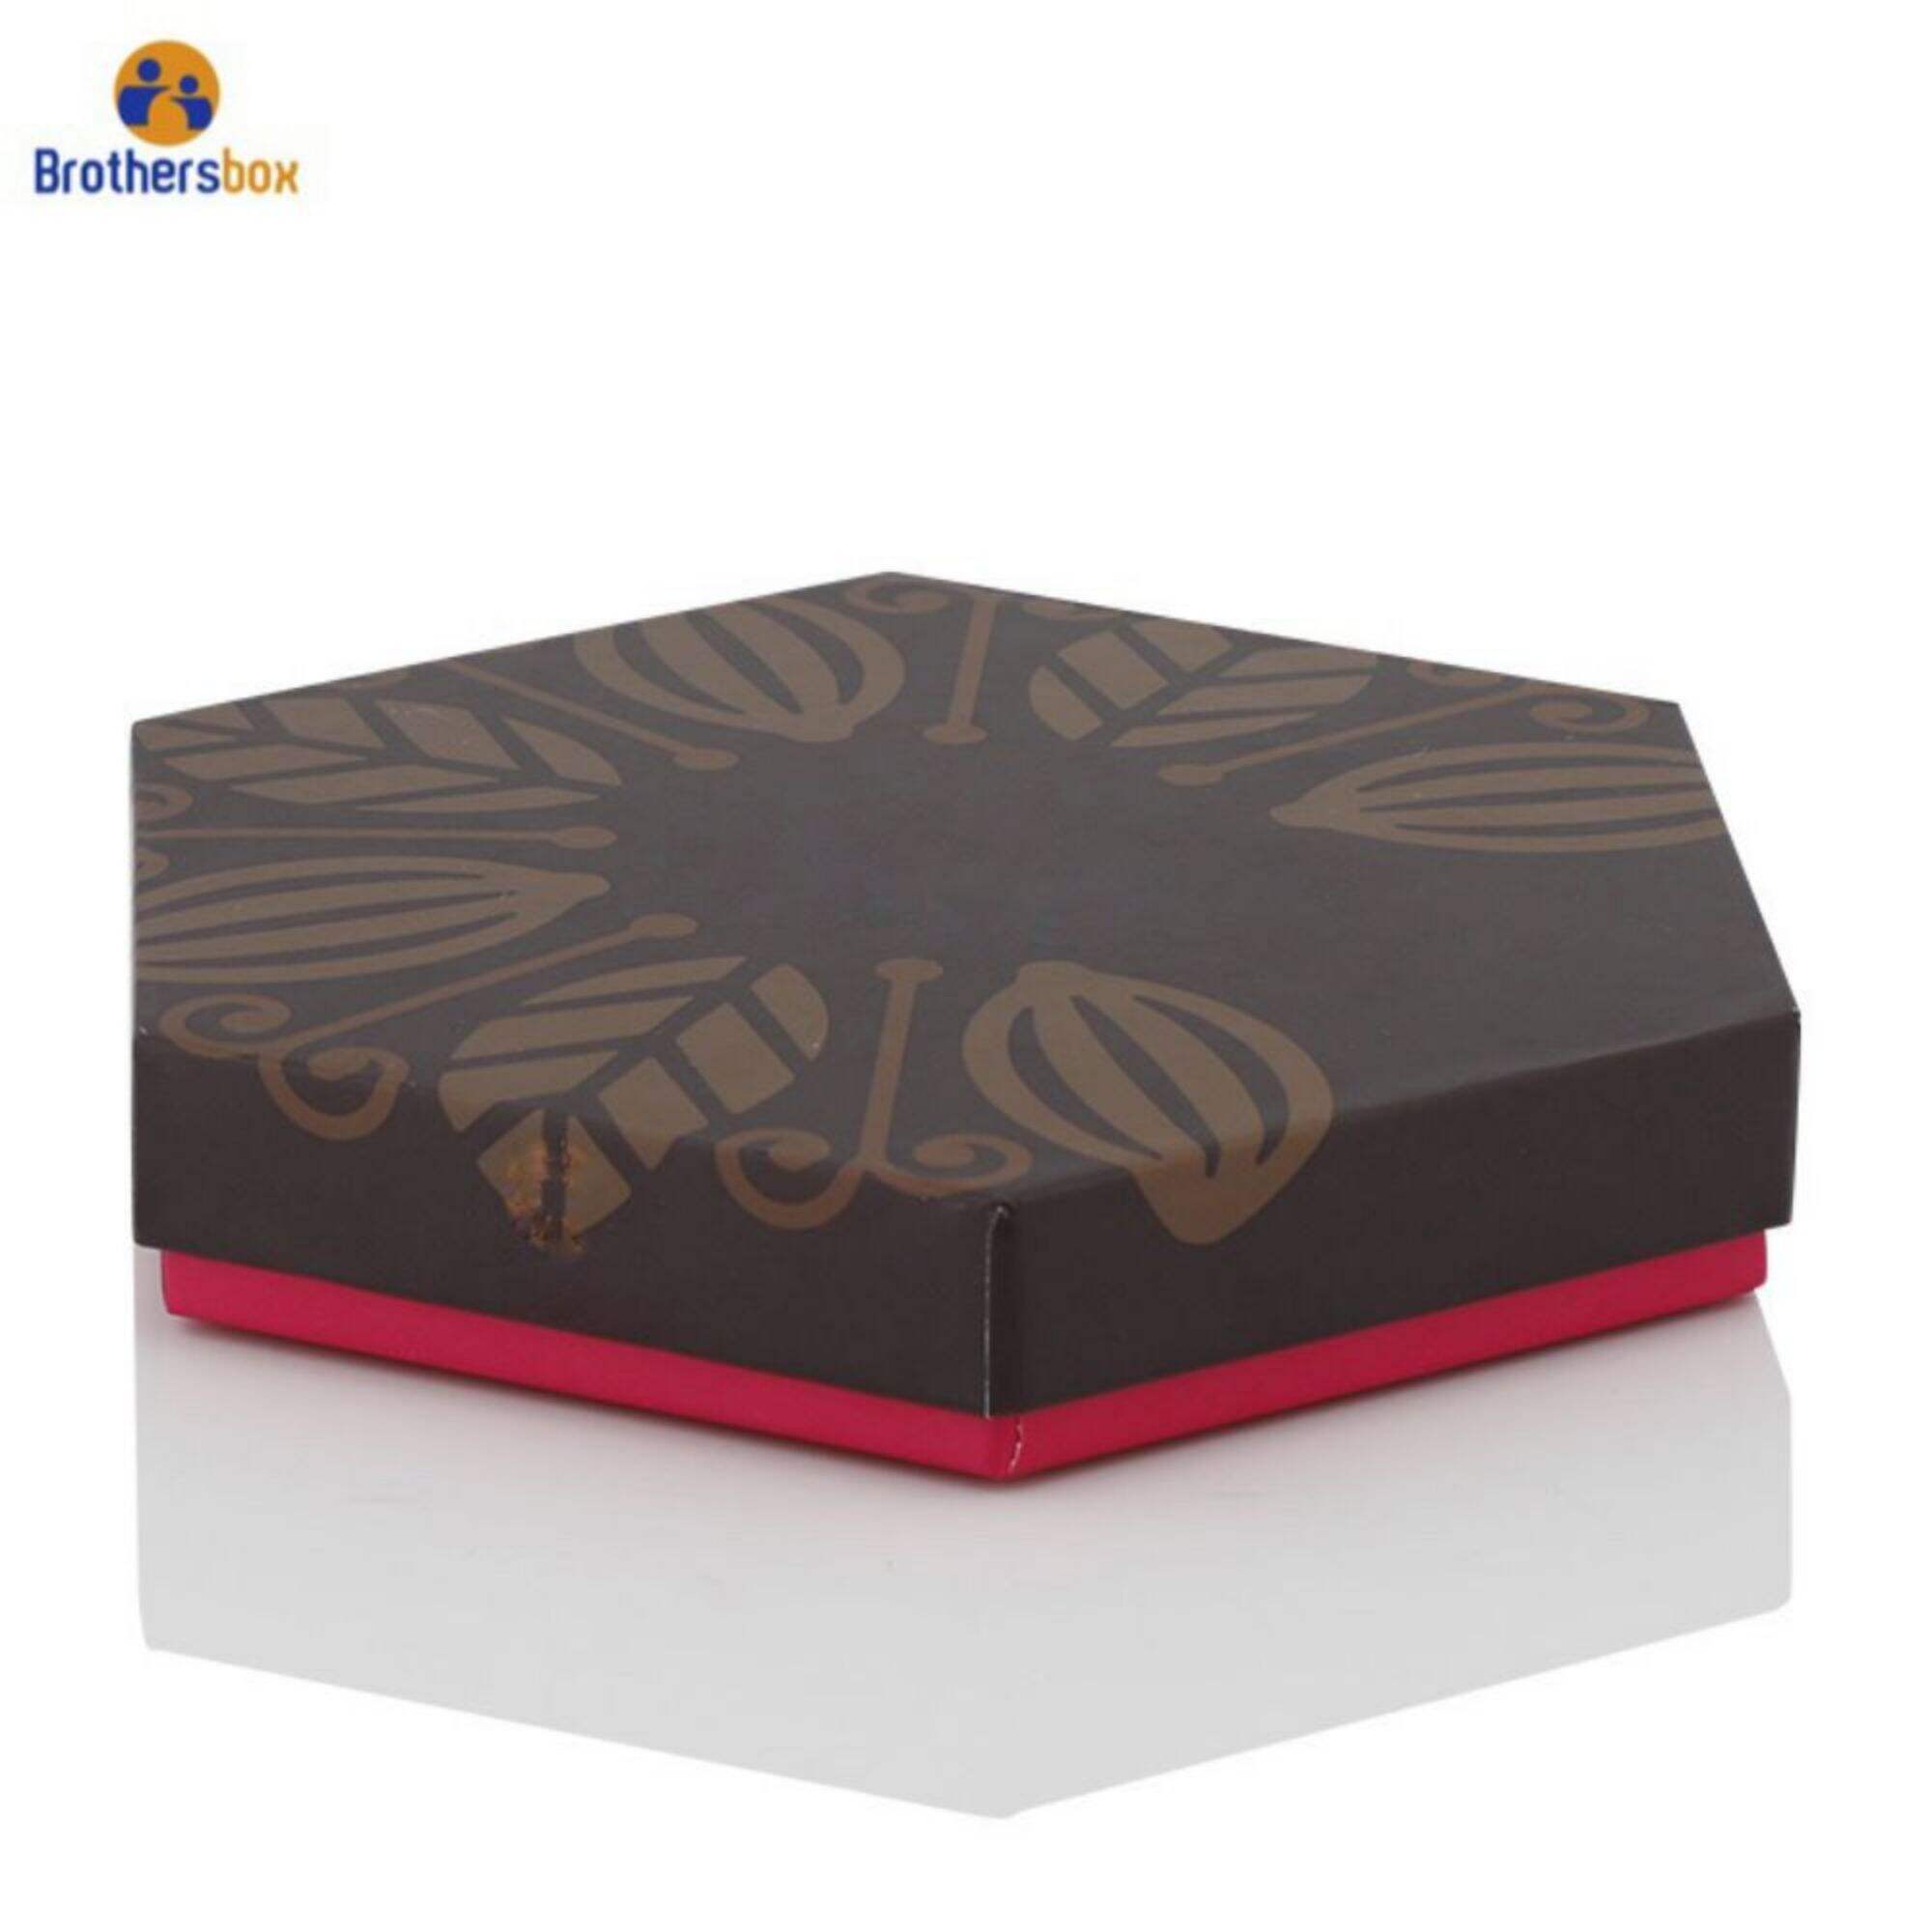 Hexagonal Empty Chocolate Boxes Wholesale